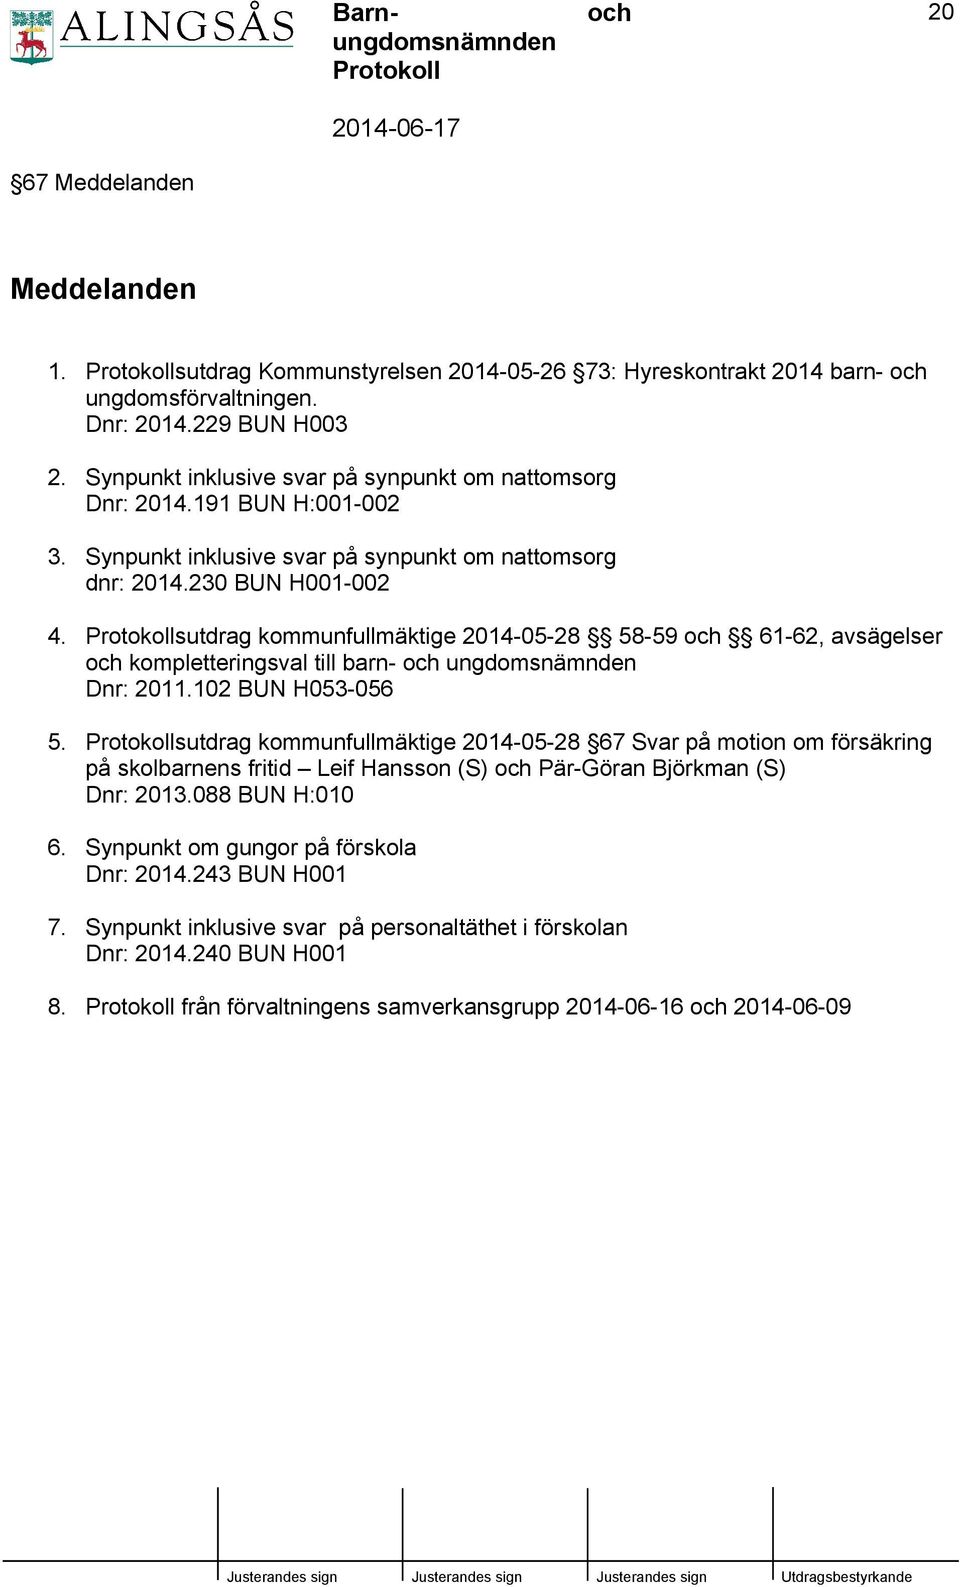 sutdrag kommunfullmäktige 2014-05-28 58-59 61-62, avsägelser kompletteringsval till barn- ungdomsnämnden Dnr: 2011.102 BUN H053-056 5.